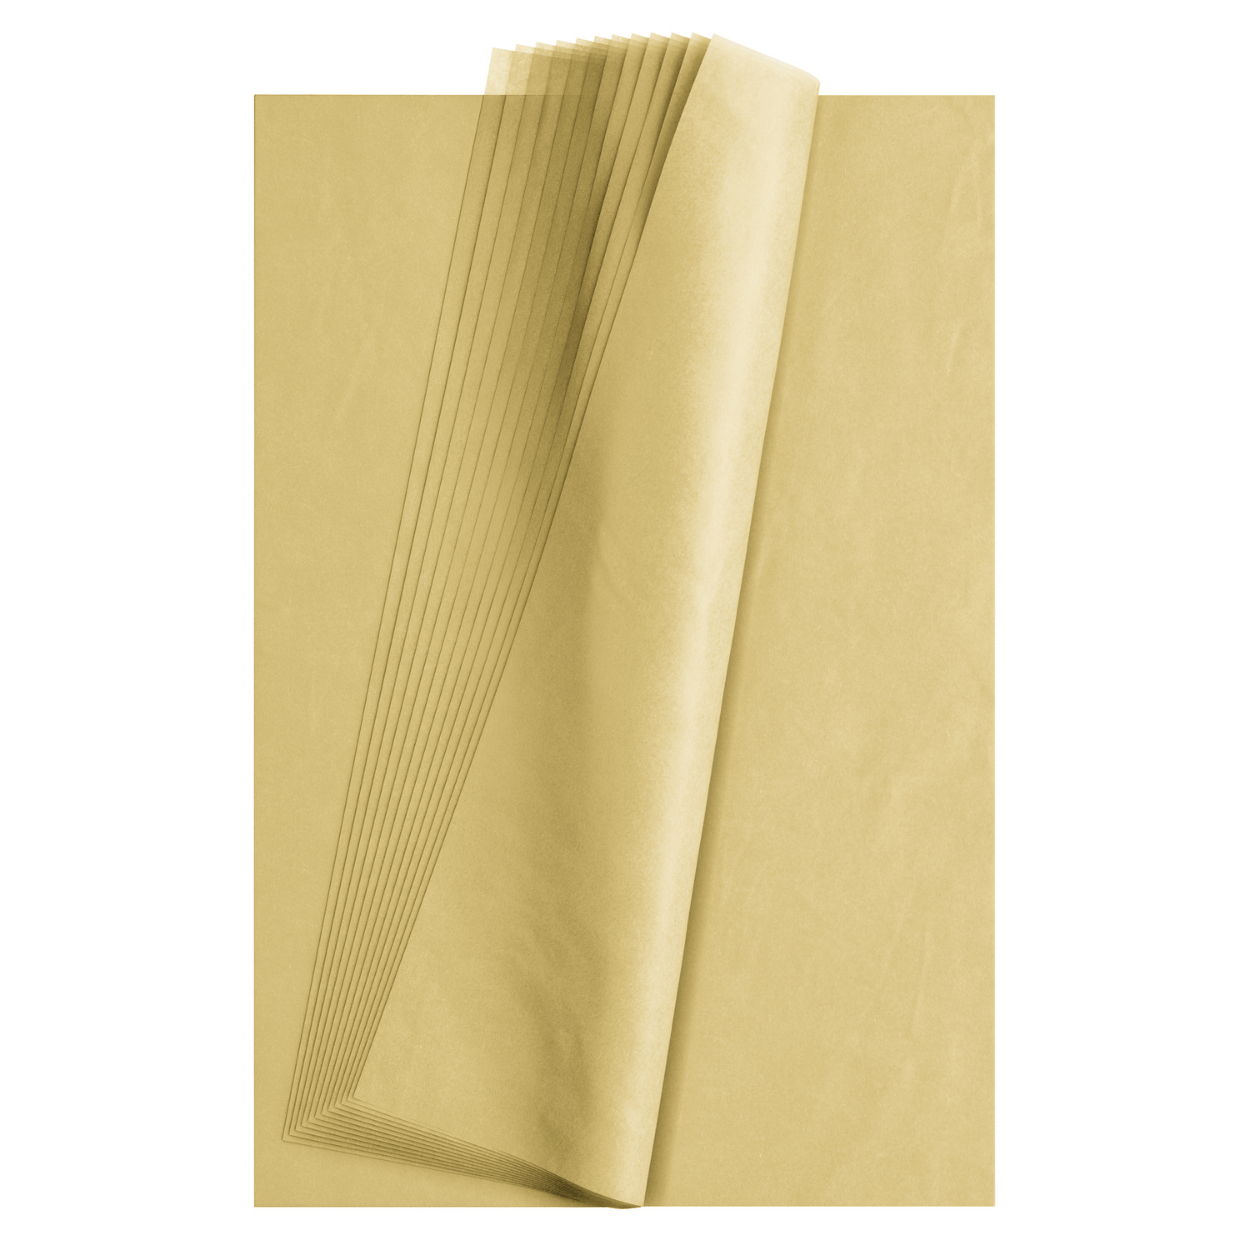 Burgundy Tissue Paper, 15x20, 100 ct